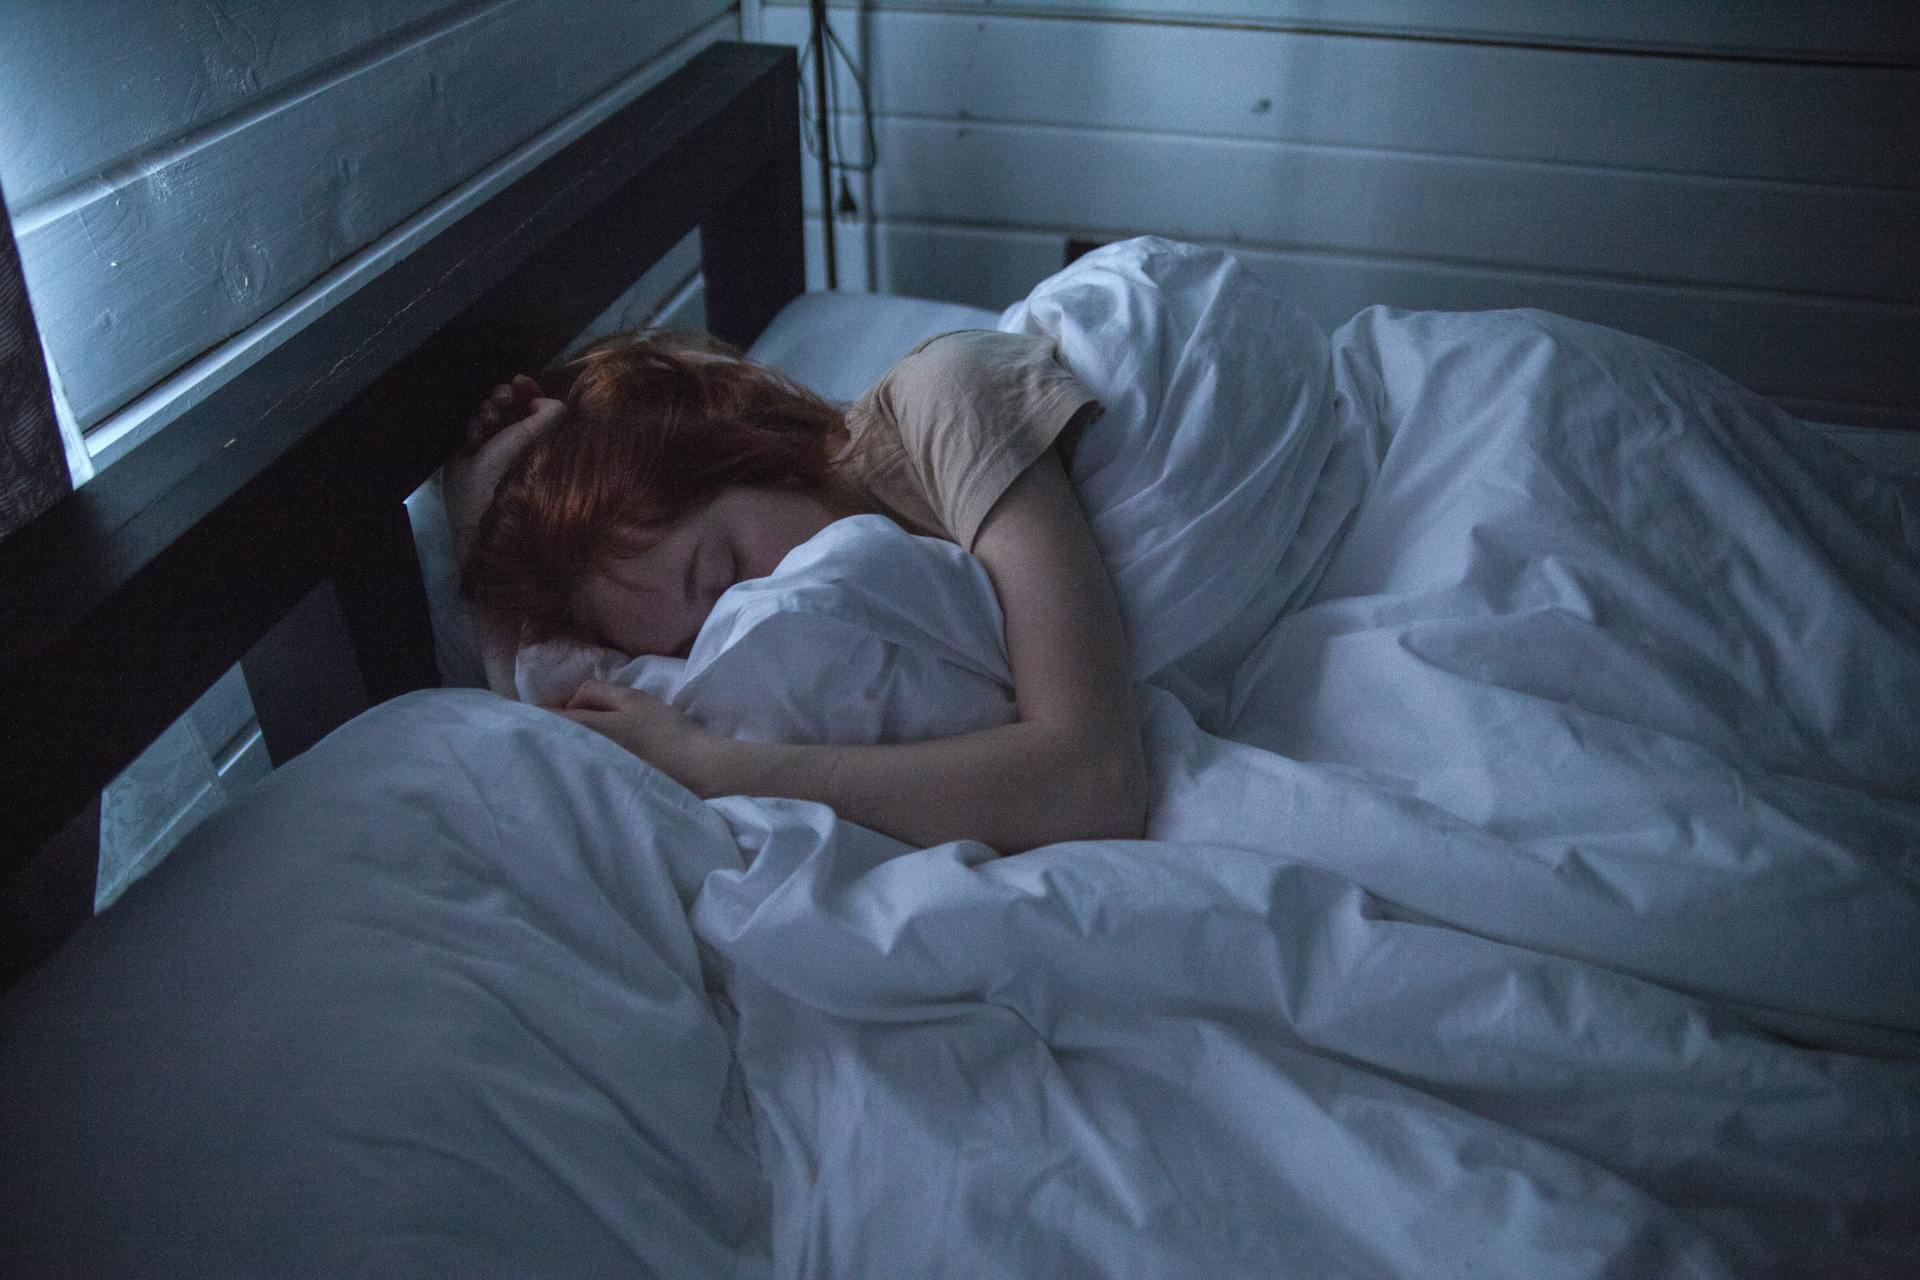 Eine in Laken eingewickelte Frau im Bett | Quelle: Pexels